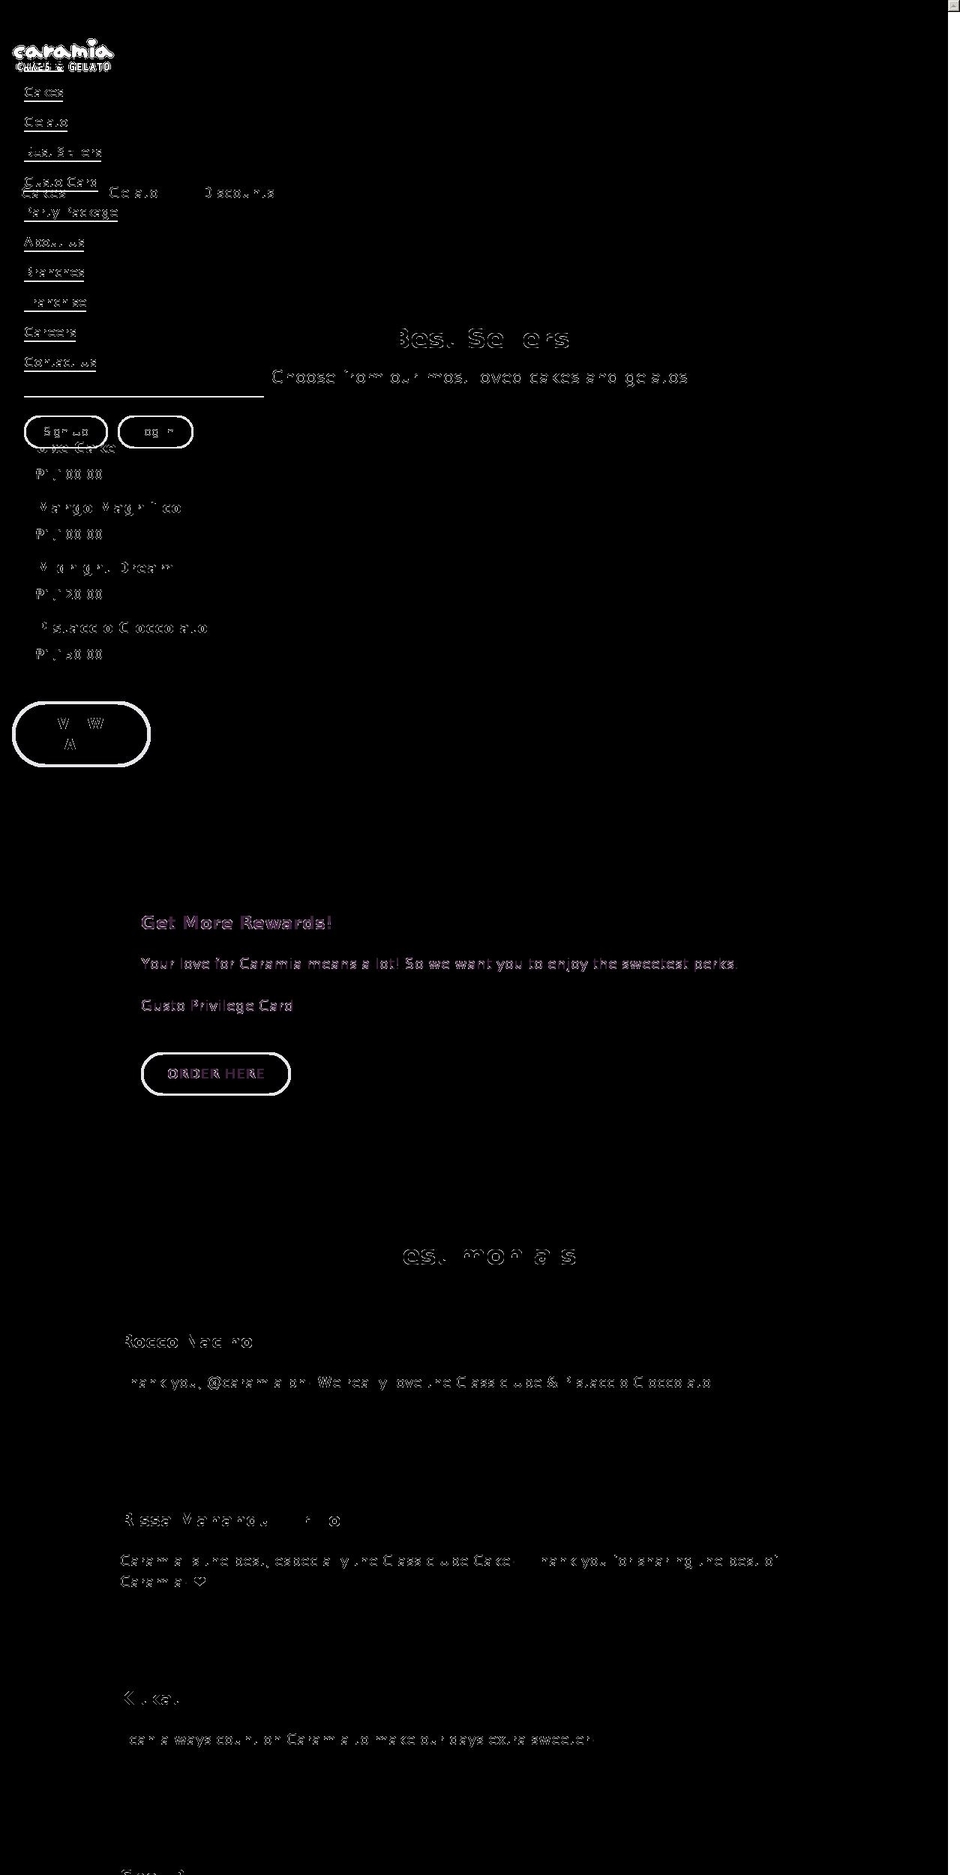 caramia.ph shopify website screenshot